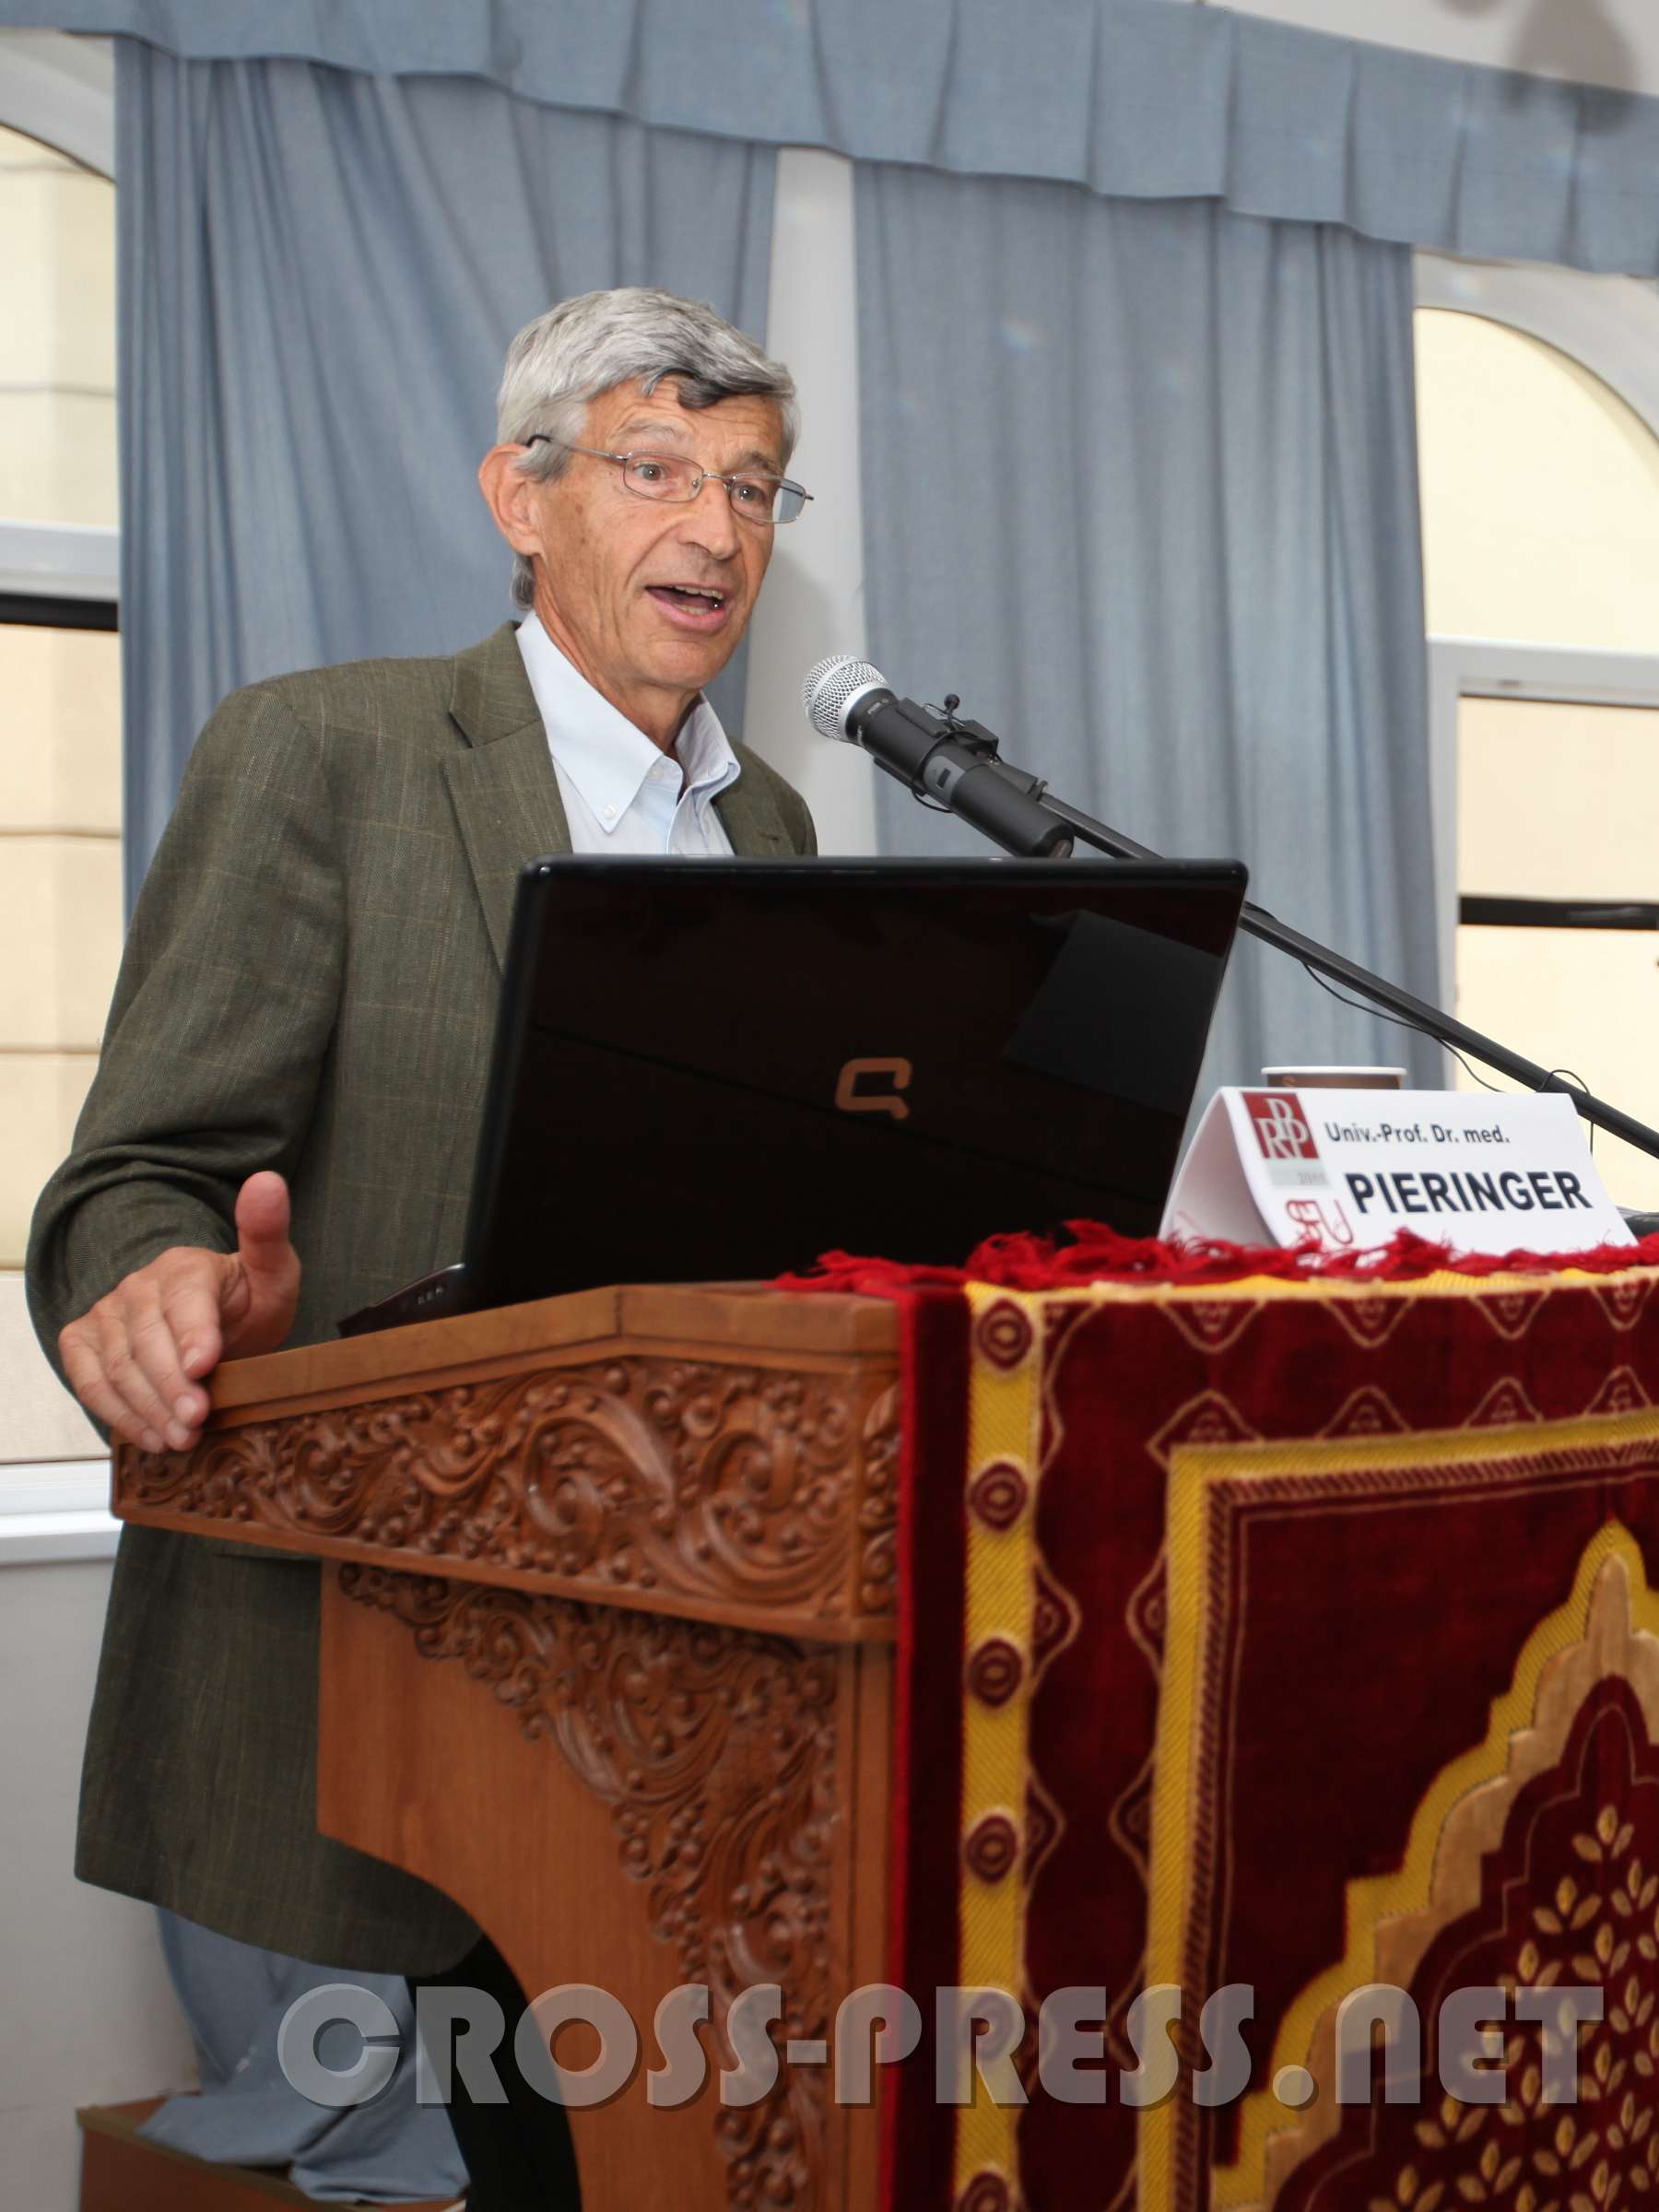 RPP 2011 "Das Unbehagen mit der Religion" Univ.-Prof. Dr. med. Walter Pieringer hielt den Vortrag "Religiöser Fanatismus als Psychodynamik".